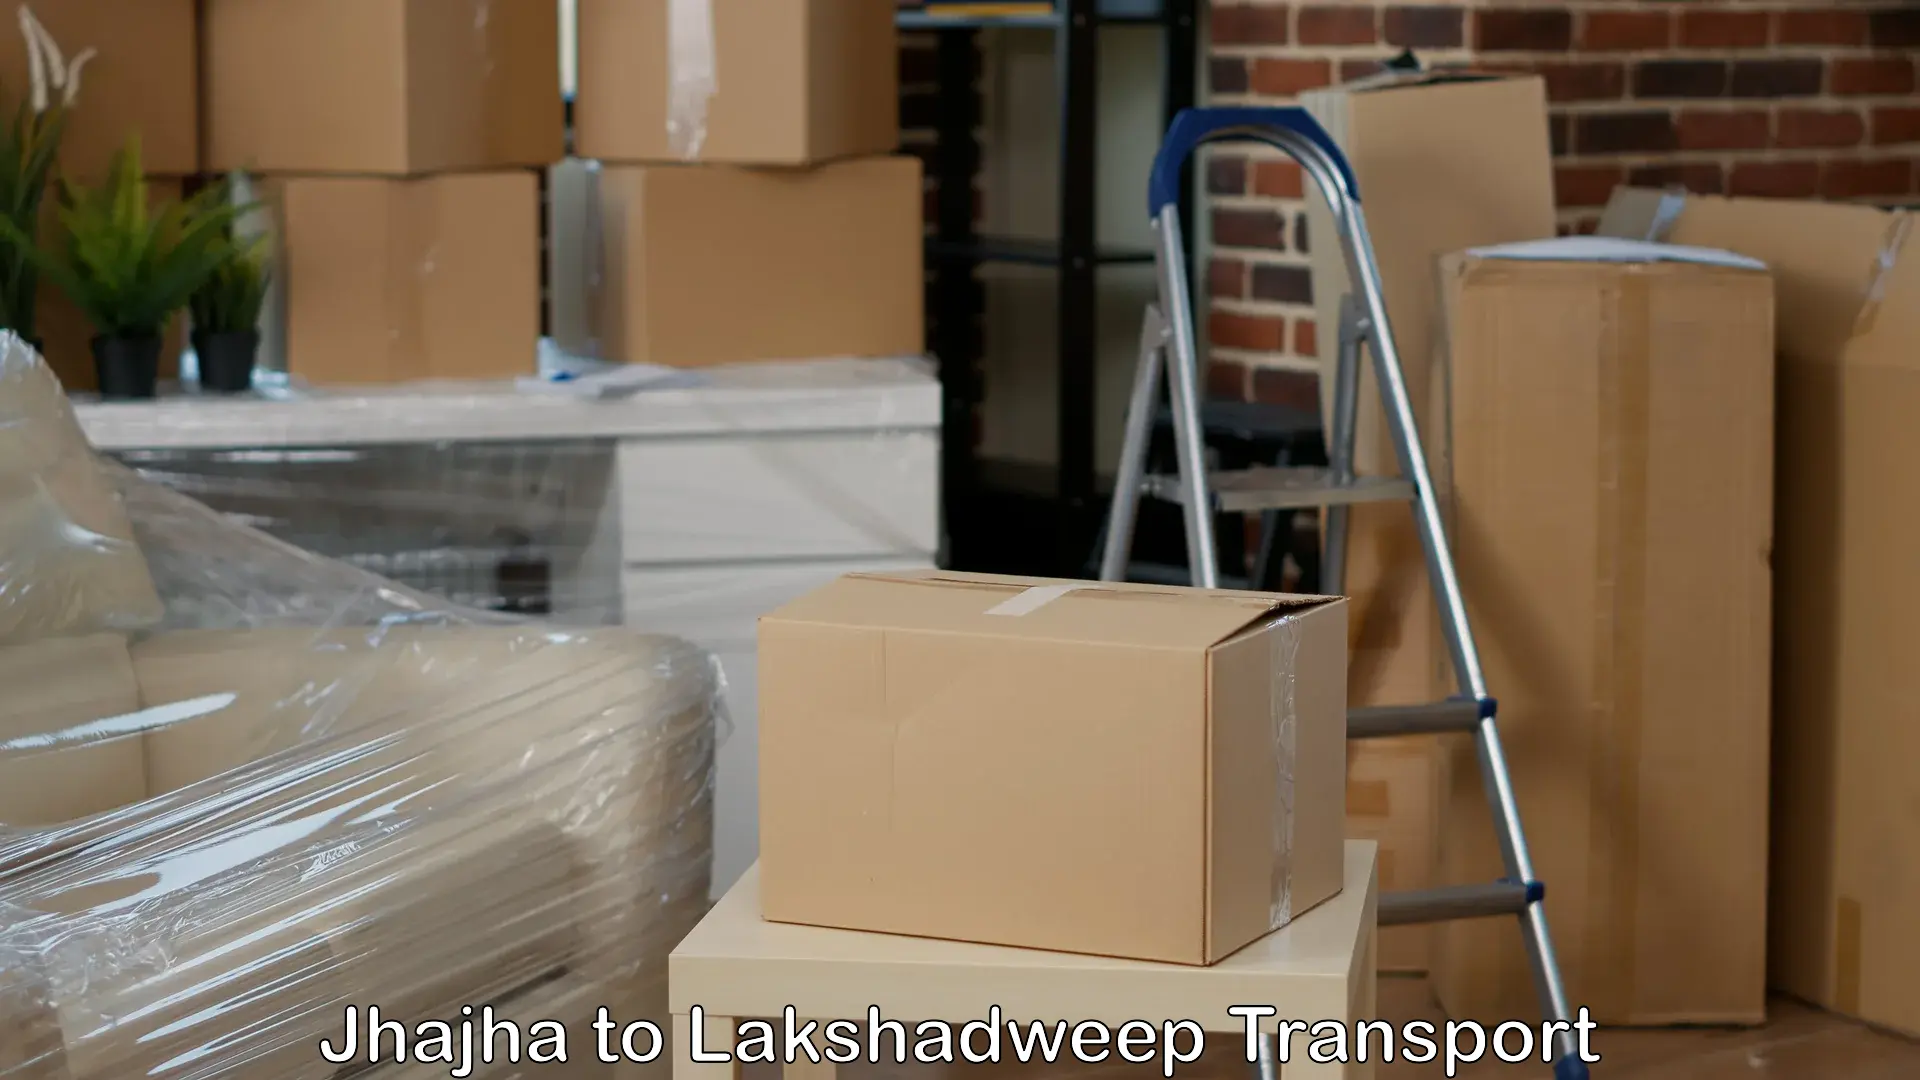 Shipping partner Jhajha to Lakshadweep